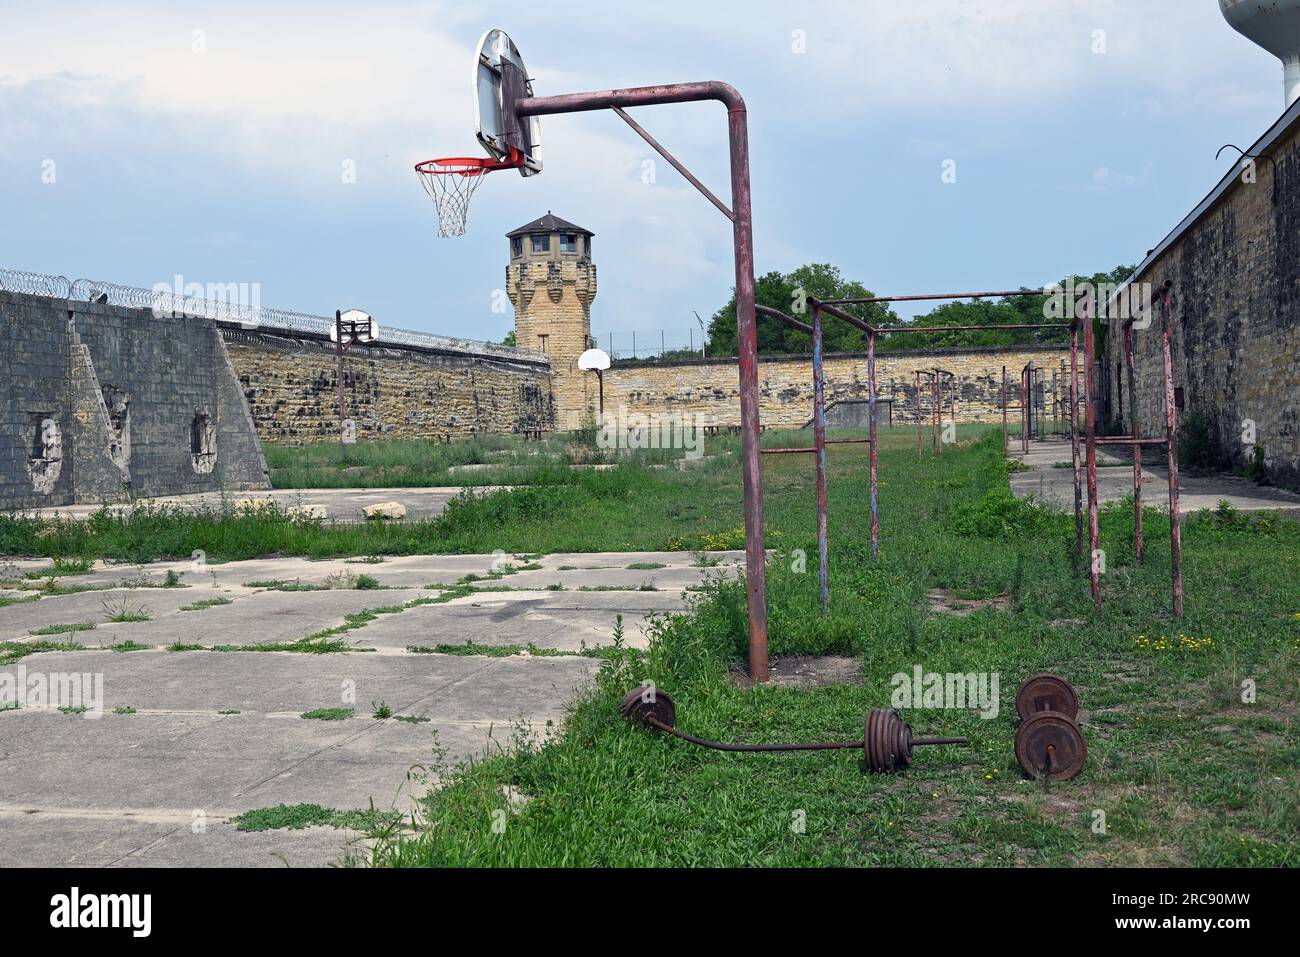 Attrezzature per esercizi arrugginiti nel cortile della vecchia prigione di Joliet, aperta nel 1858 e chiusa nel 2002. Foto Stock